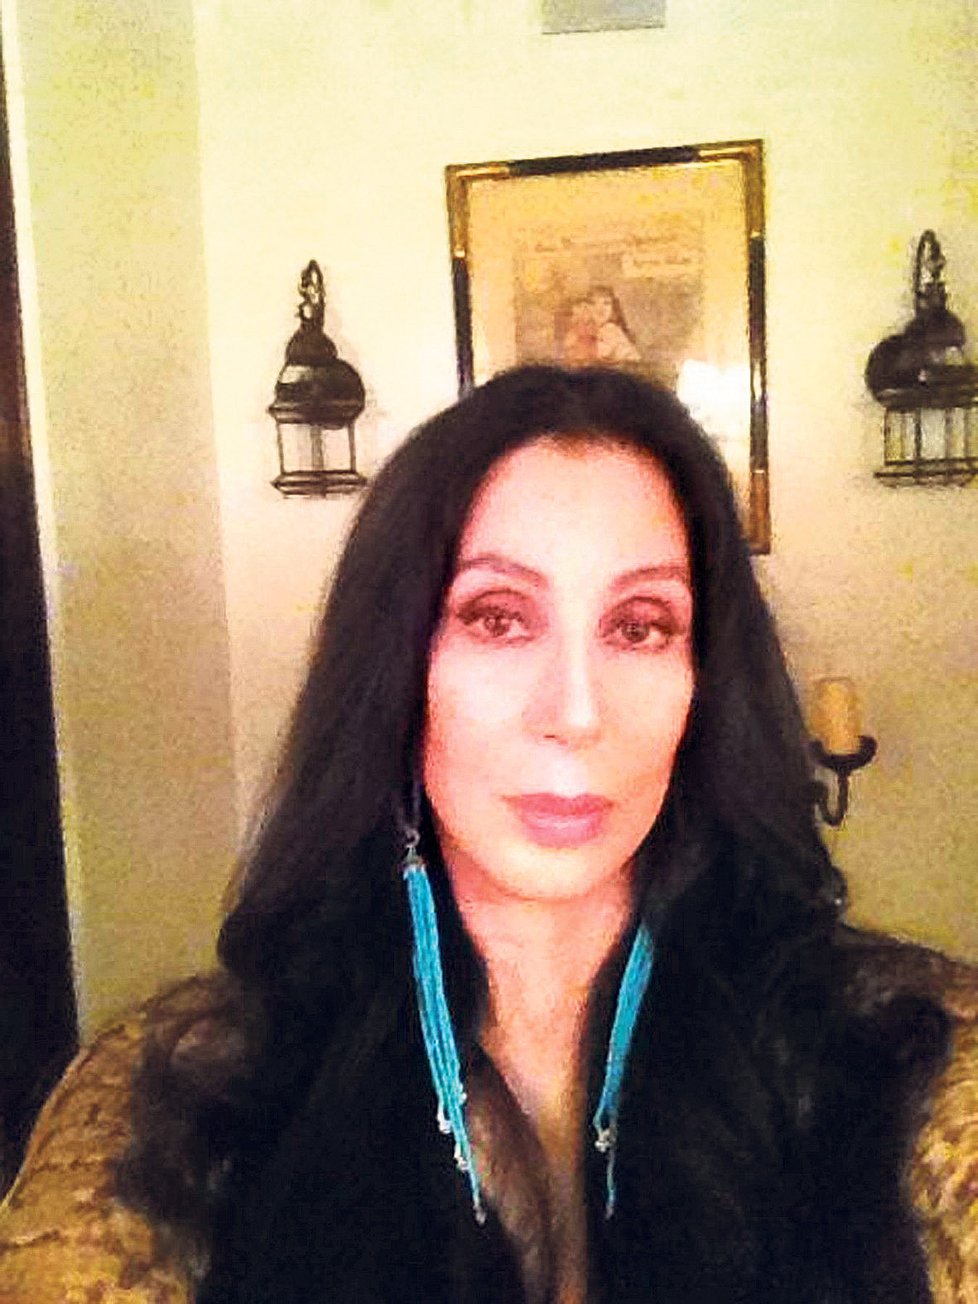 Zpěvačka Cher se bojí o své přátelé